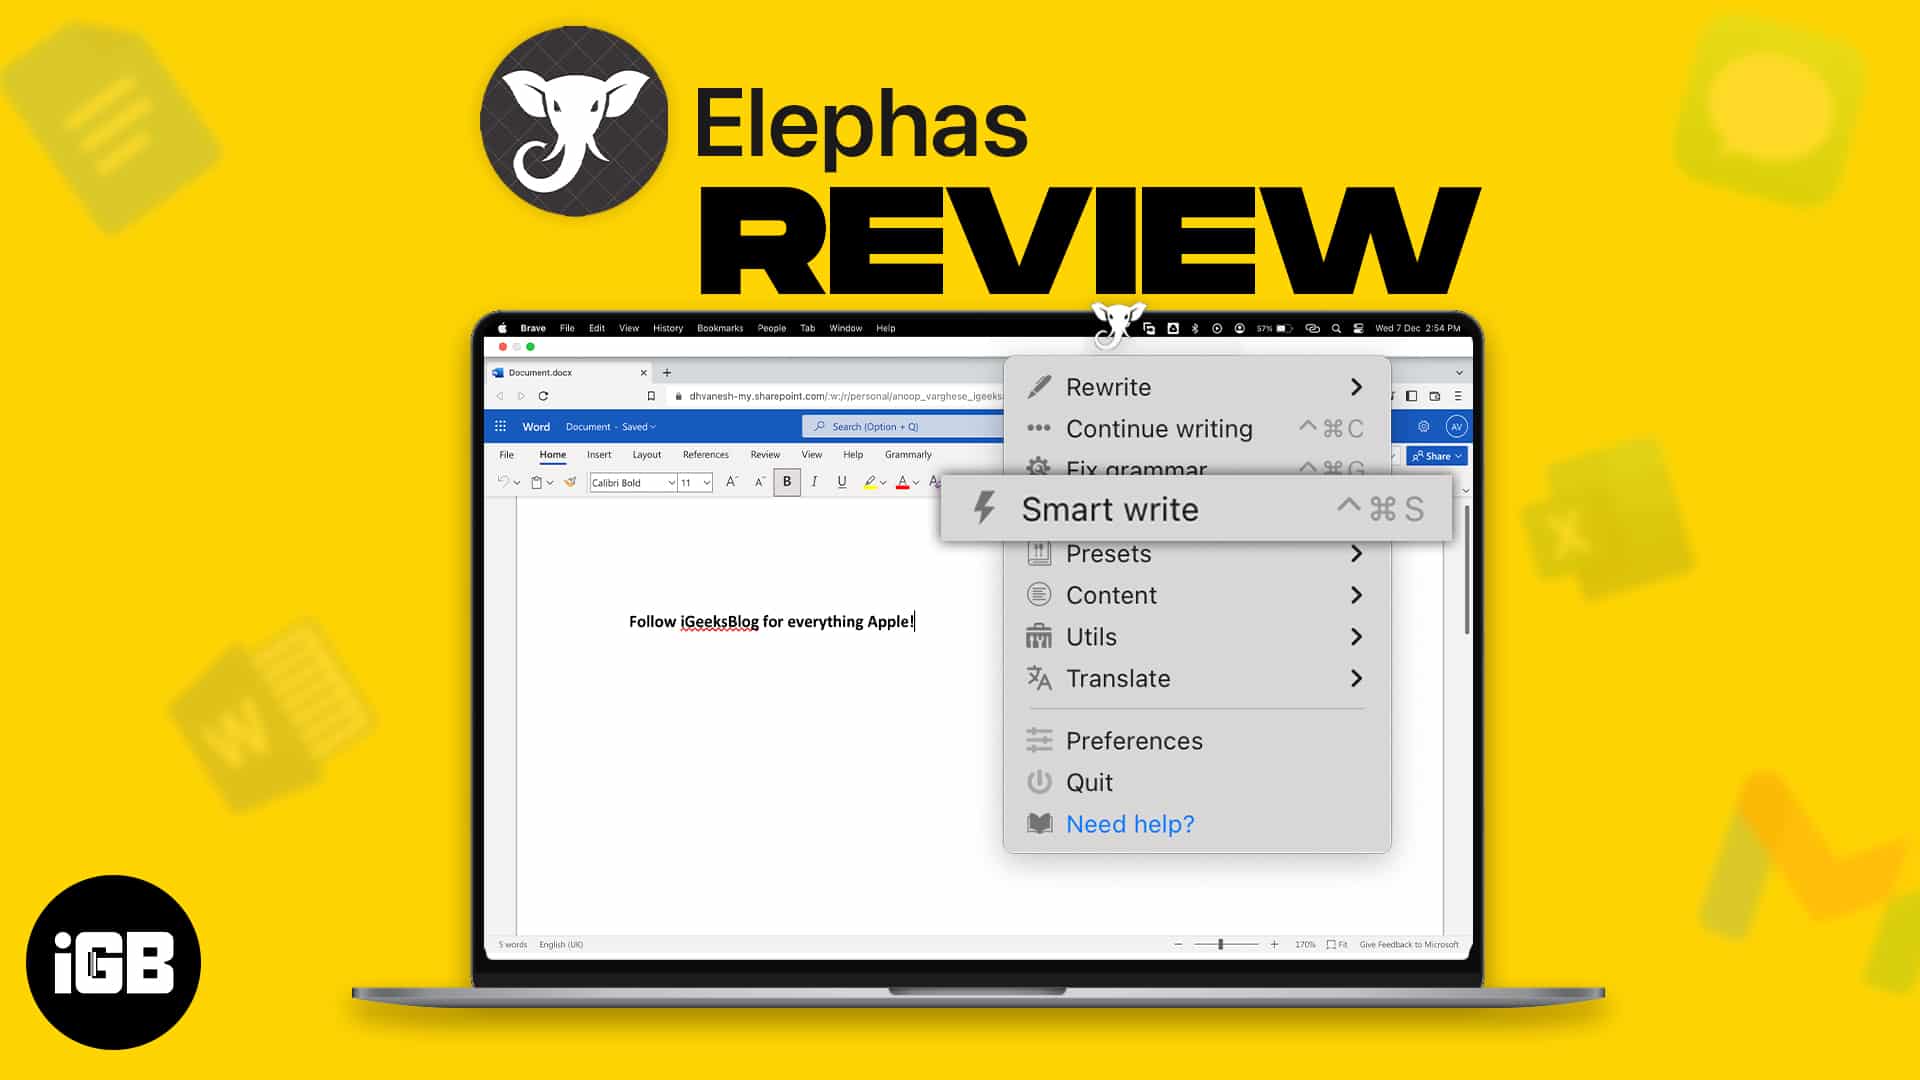 Elephas app review